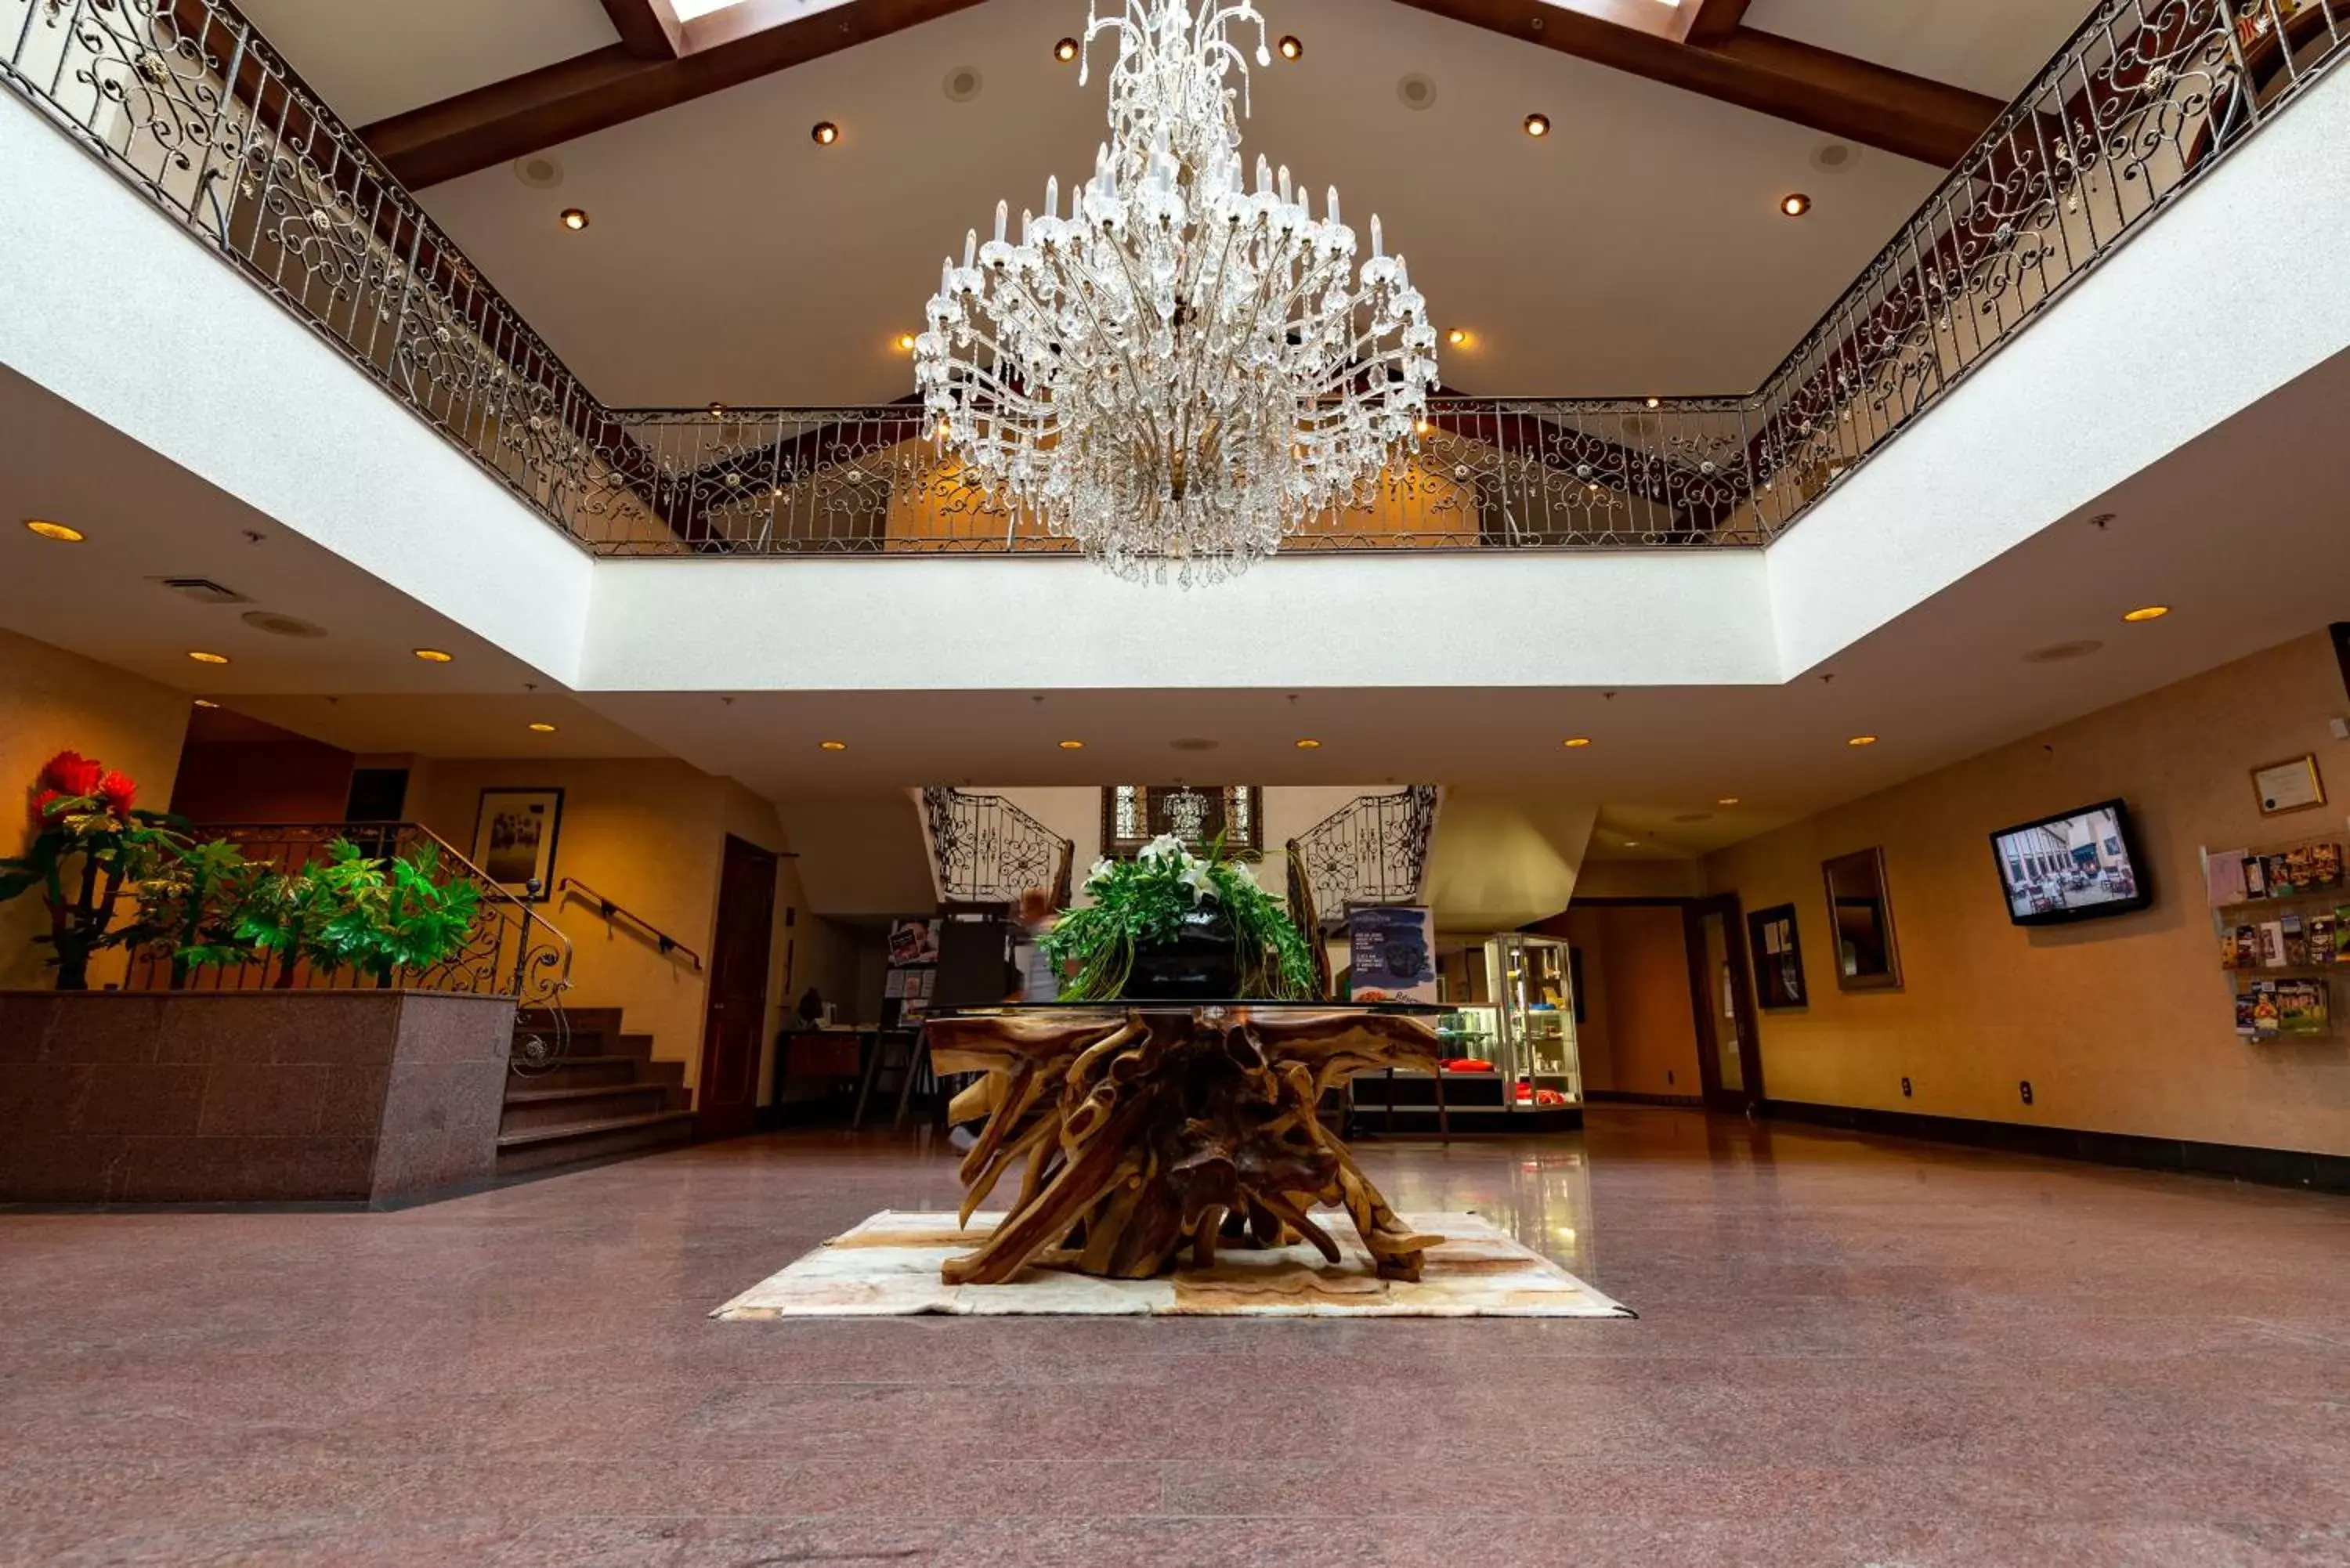 Lobby or reception, Lobby/Reception in Hôtel et centre de villégiature du lac Carling